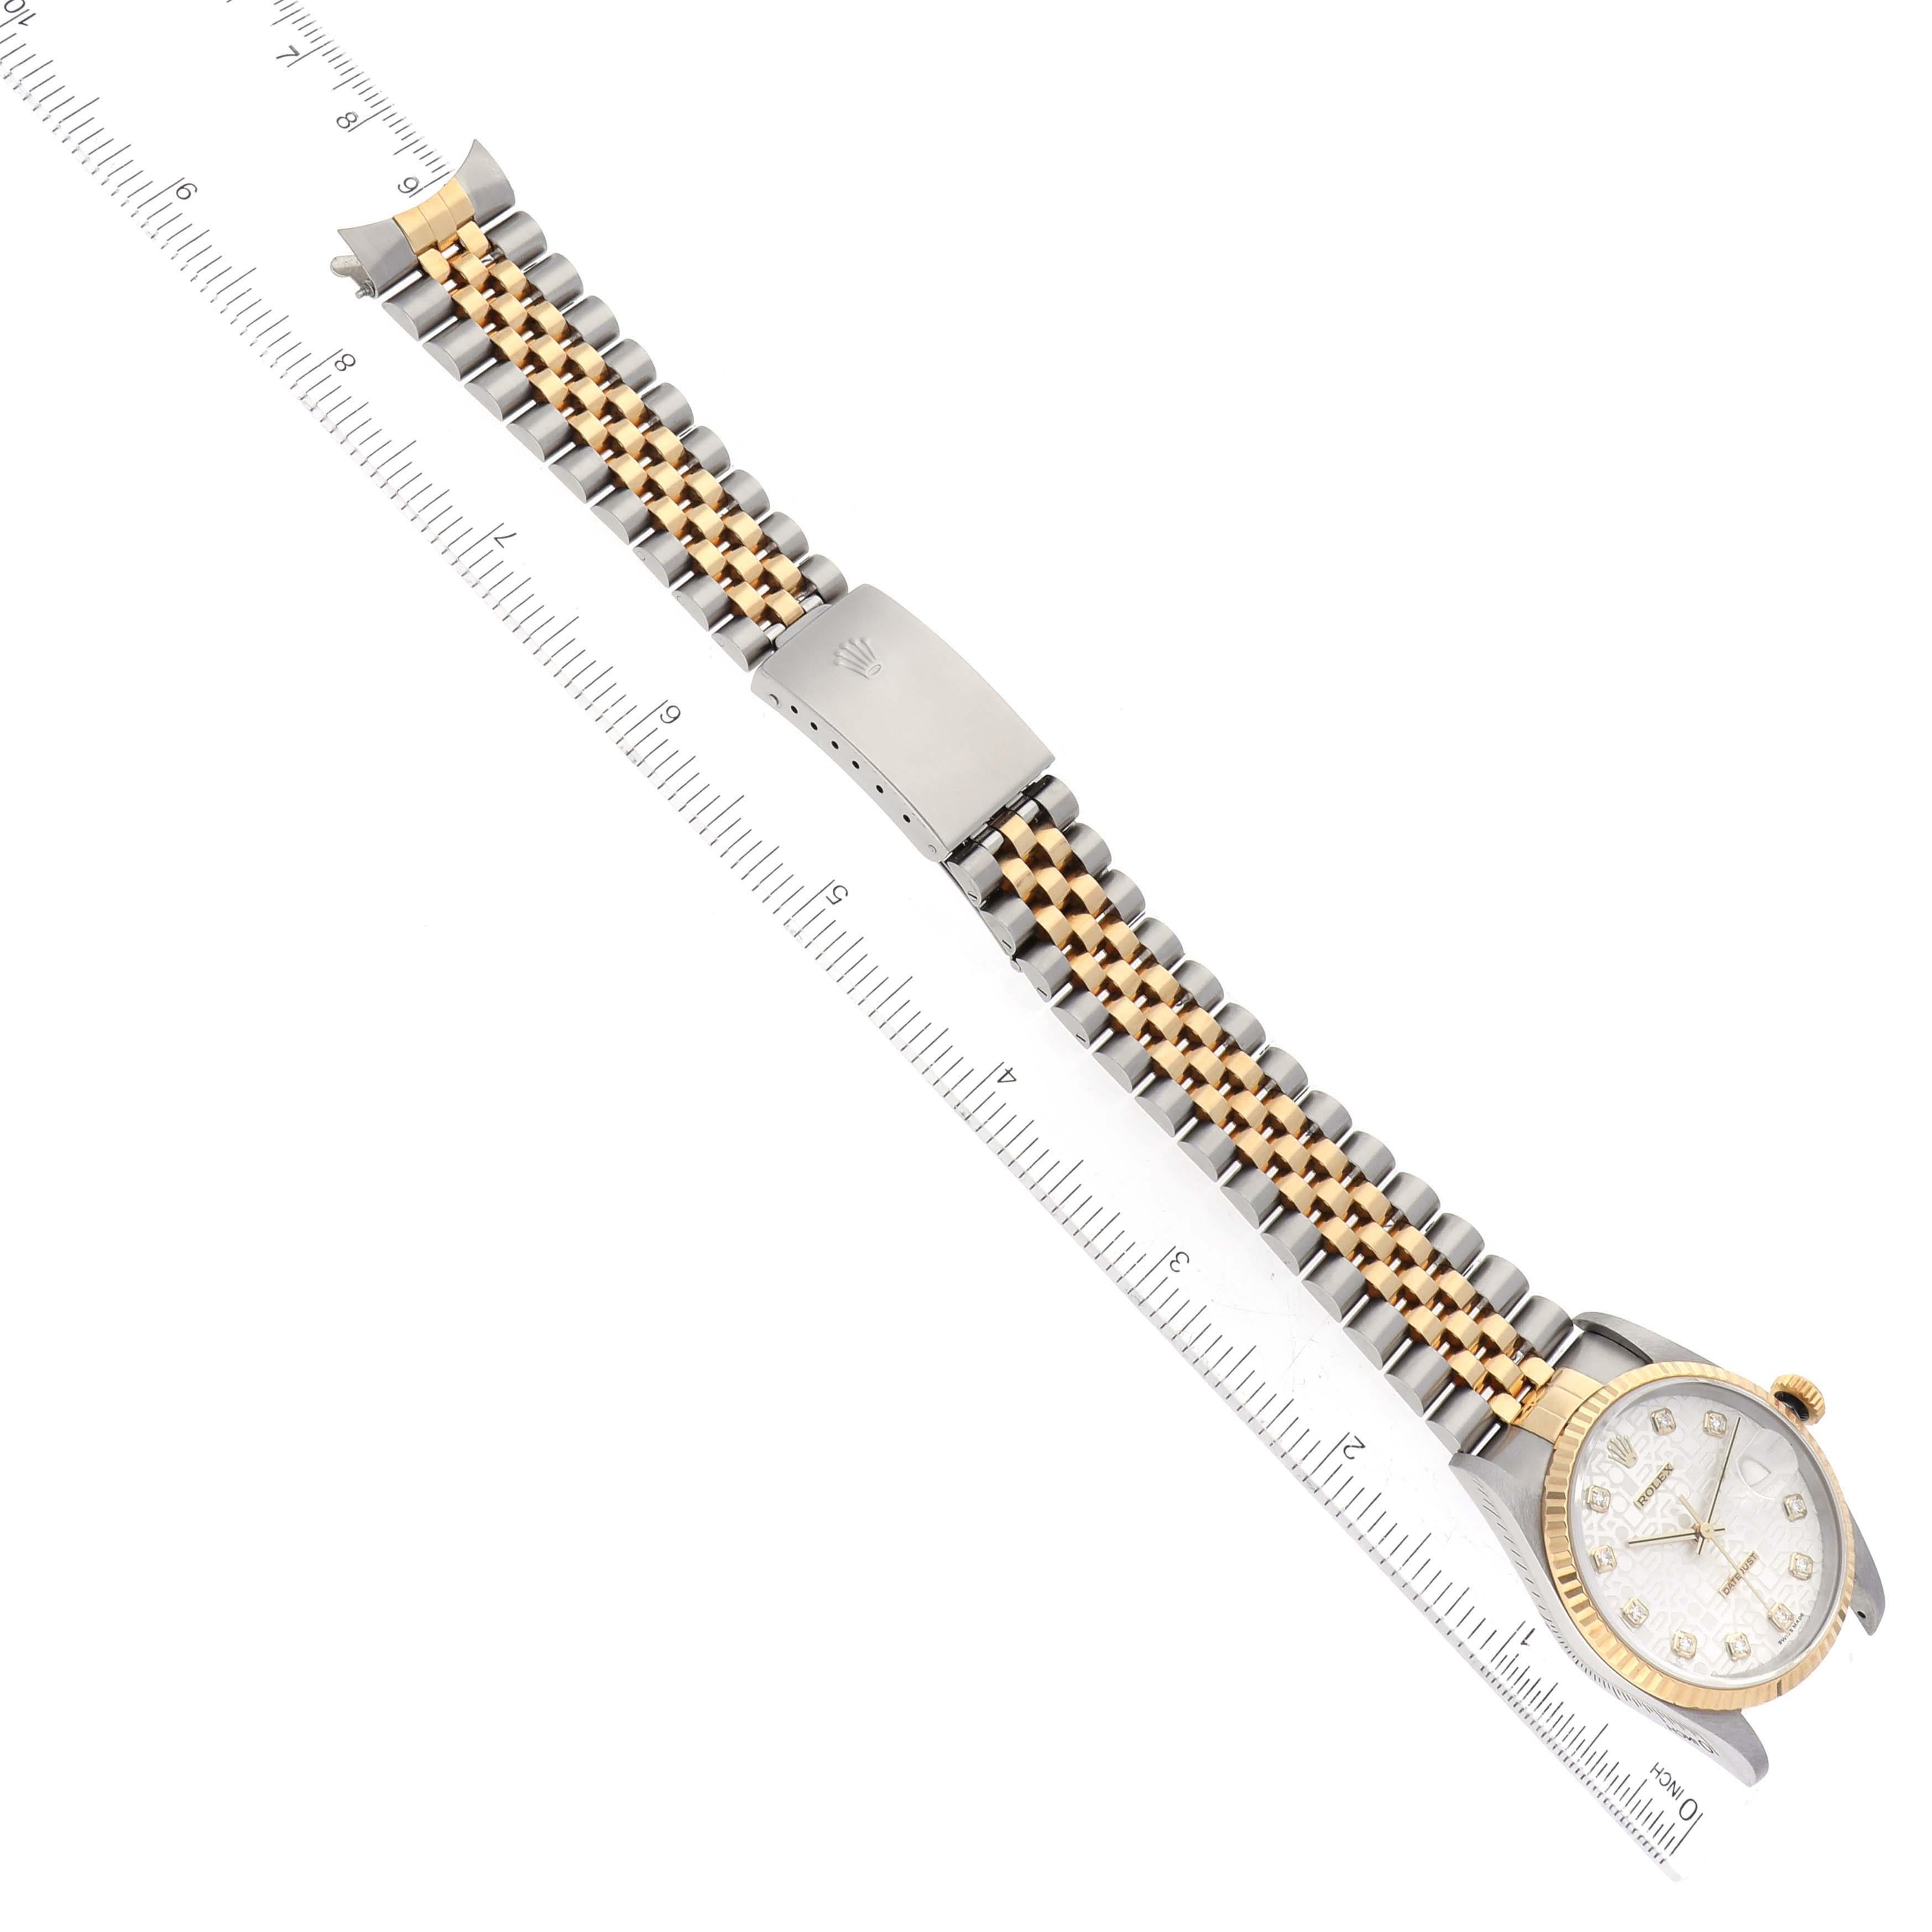 Rolex Datejust Jahrestag Diamant-Zifferblatt Stahl-Gelbgold-Uhr 16233 Box Papiere 6